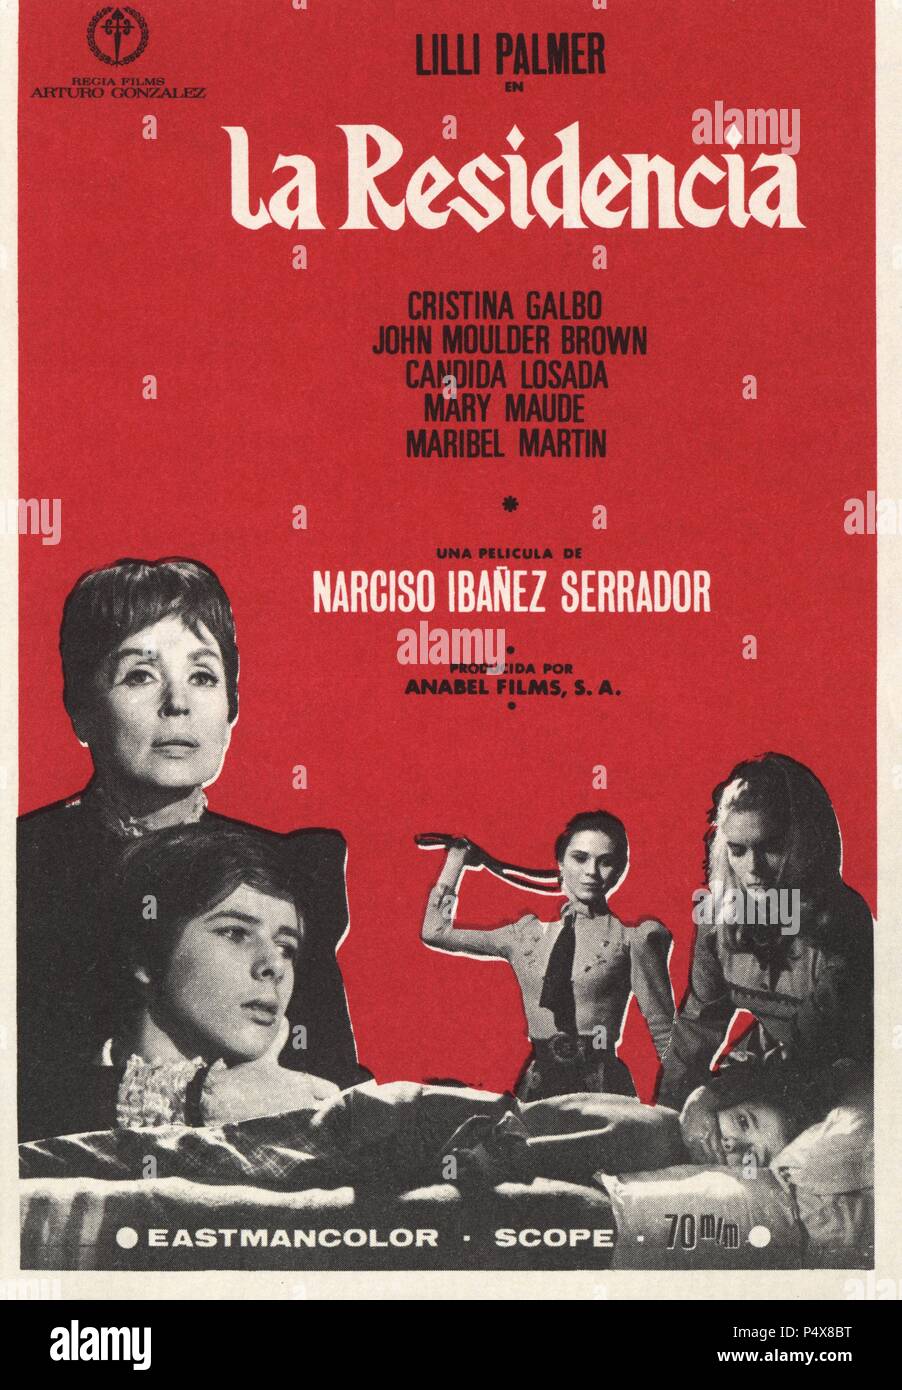 Cartel de la película La Residencia, con Lilli Palmer y Cristina Galbó, dirigida por Narciso Ibáñez Serrador. España, 1969. Stock Photo